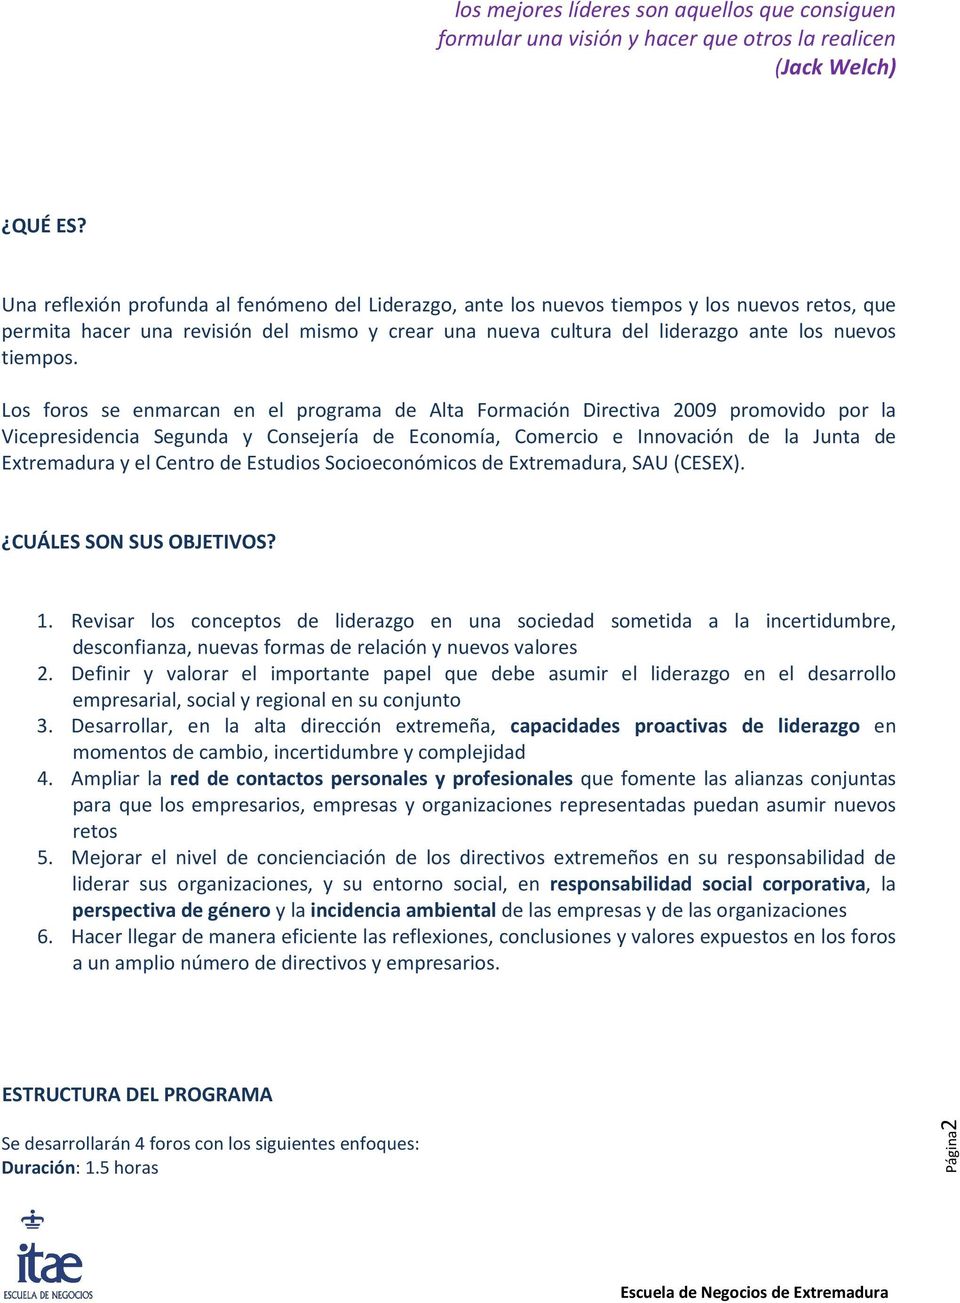 Los foros se enmarcan en el programa de Alta Formación Directiva 2009 promovido por la Vicepresidencia Segunda y Consejería de Economía, Comercio e Innovación de la Junta de Extremadura y el Centro